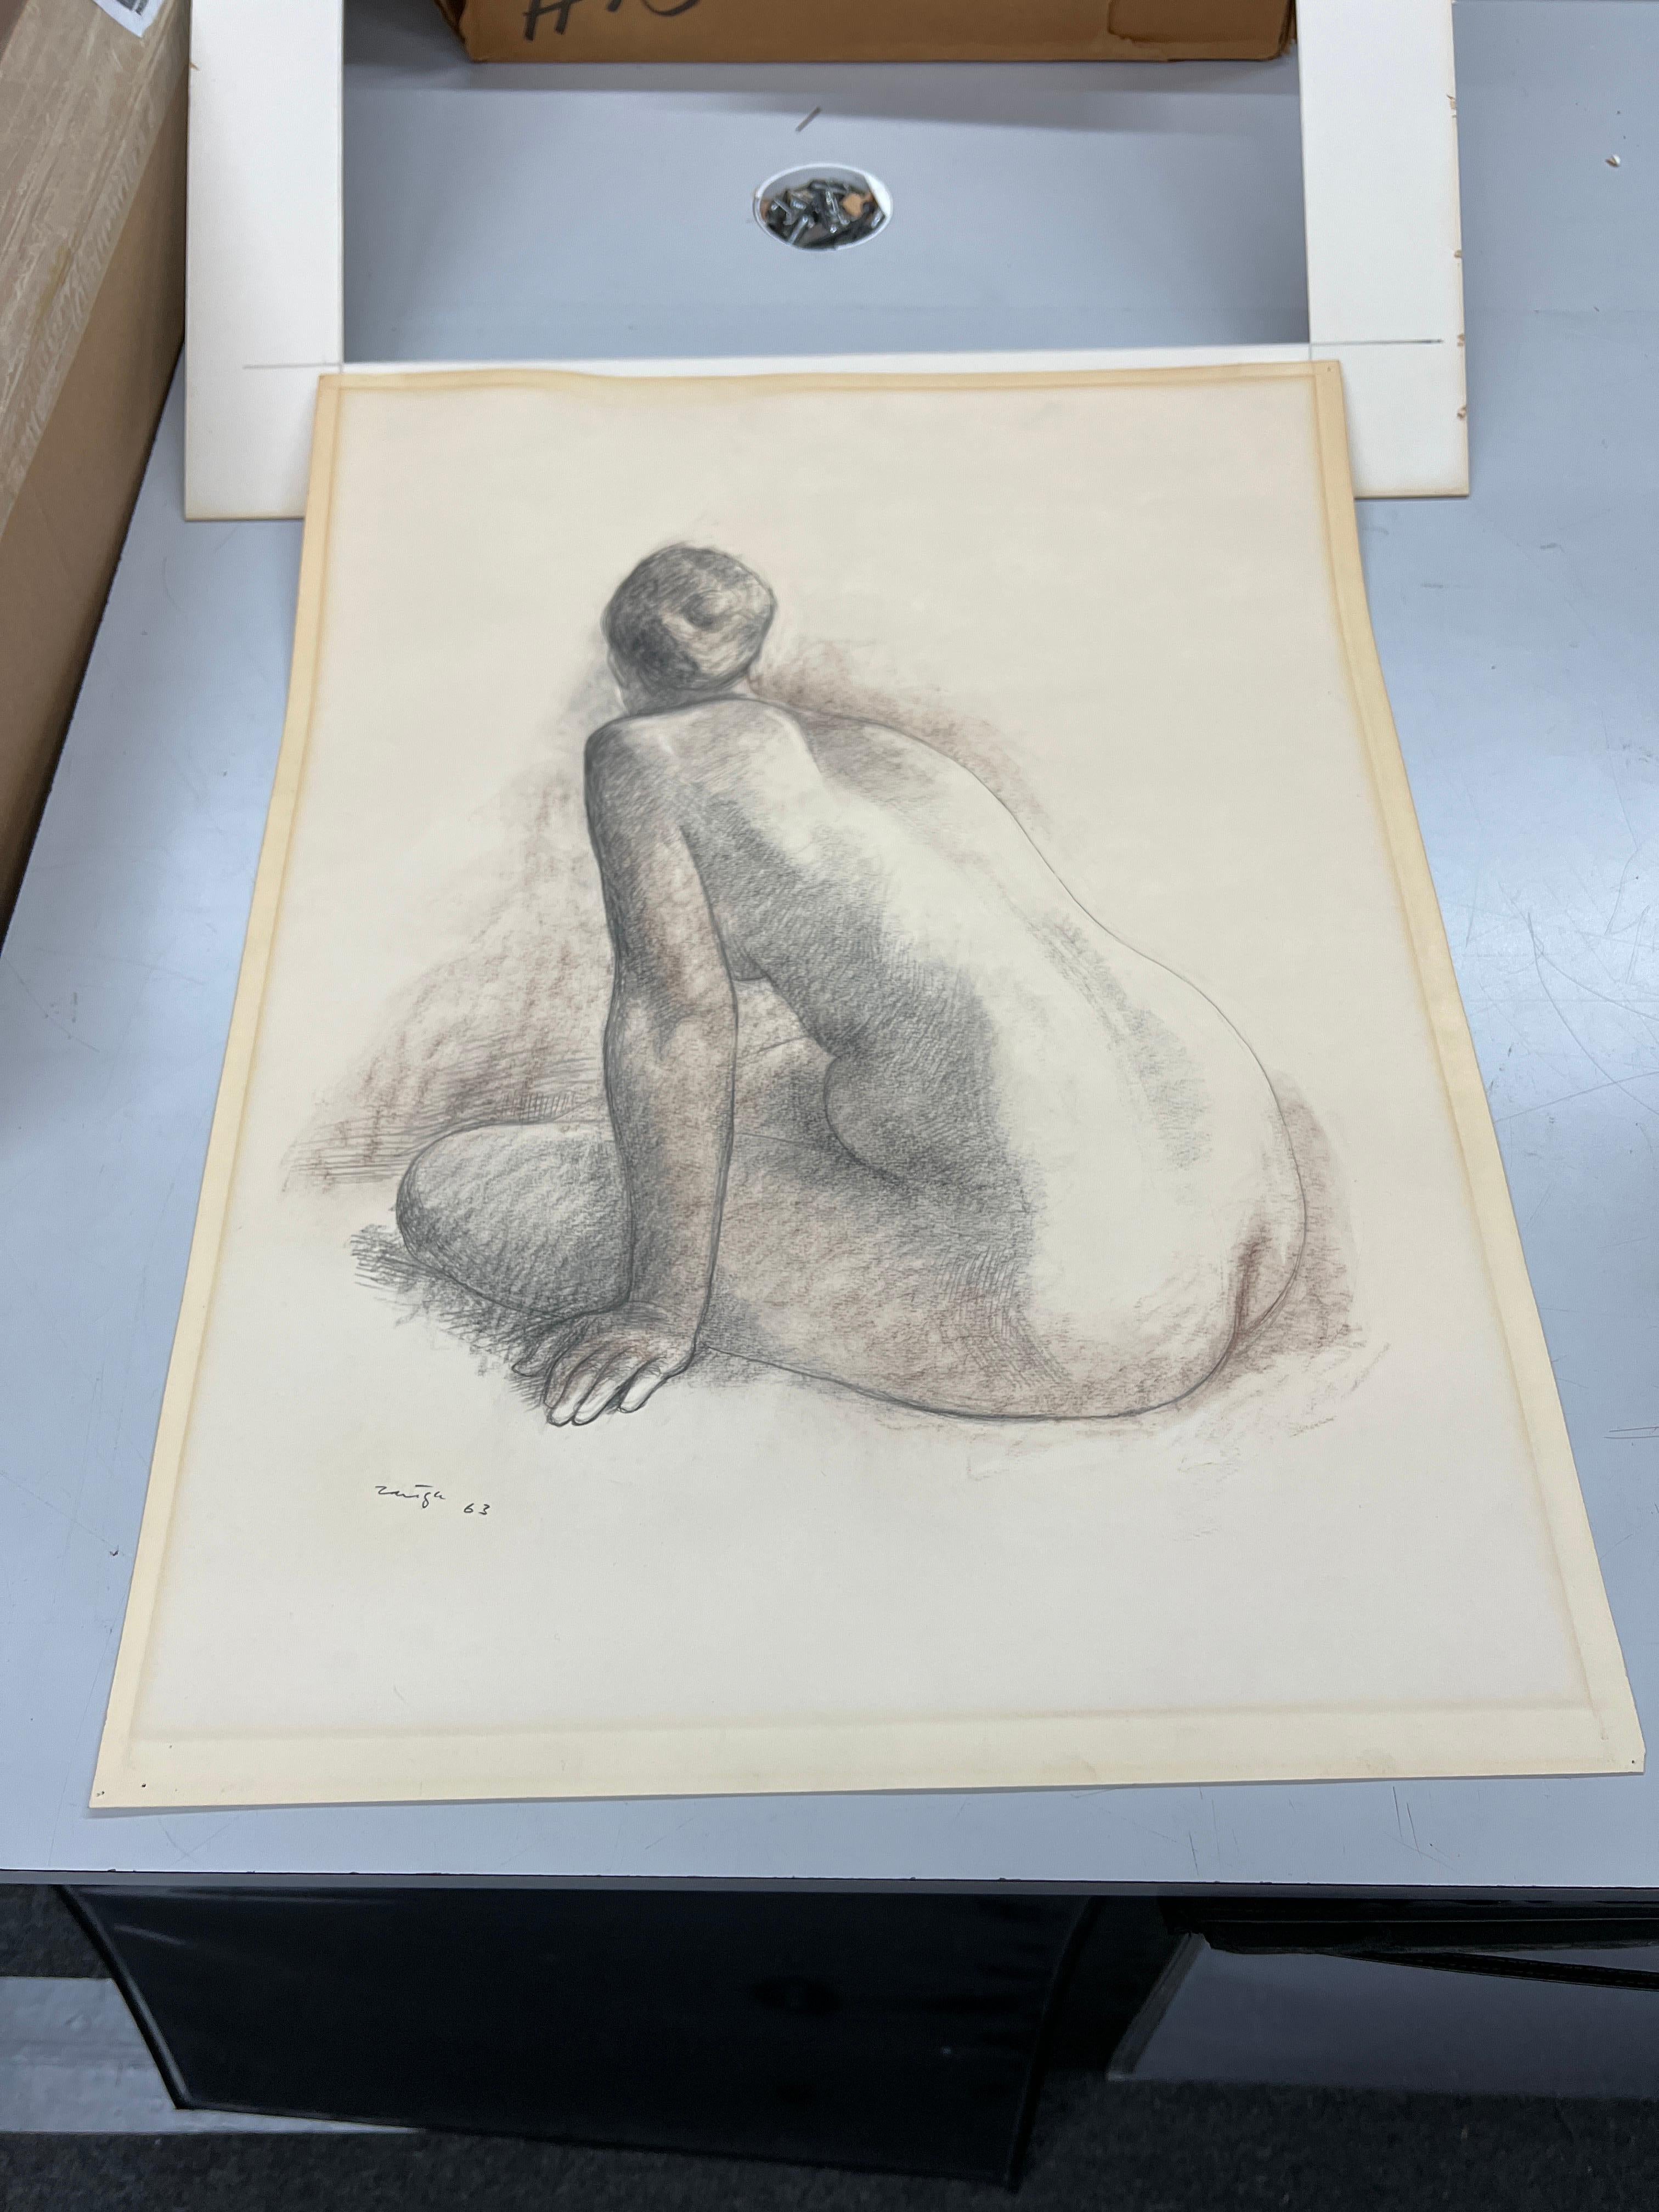 Desnudo de espalda - Print by Francisco Zúñiga